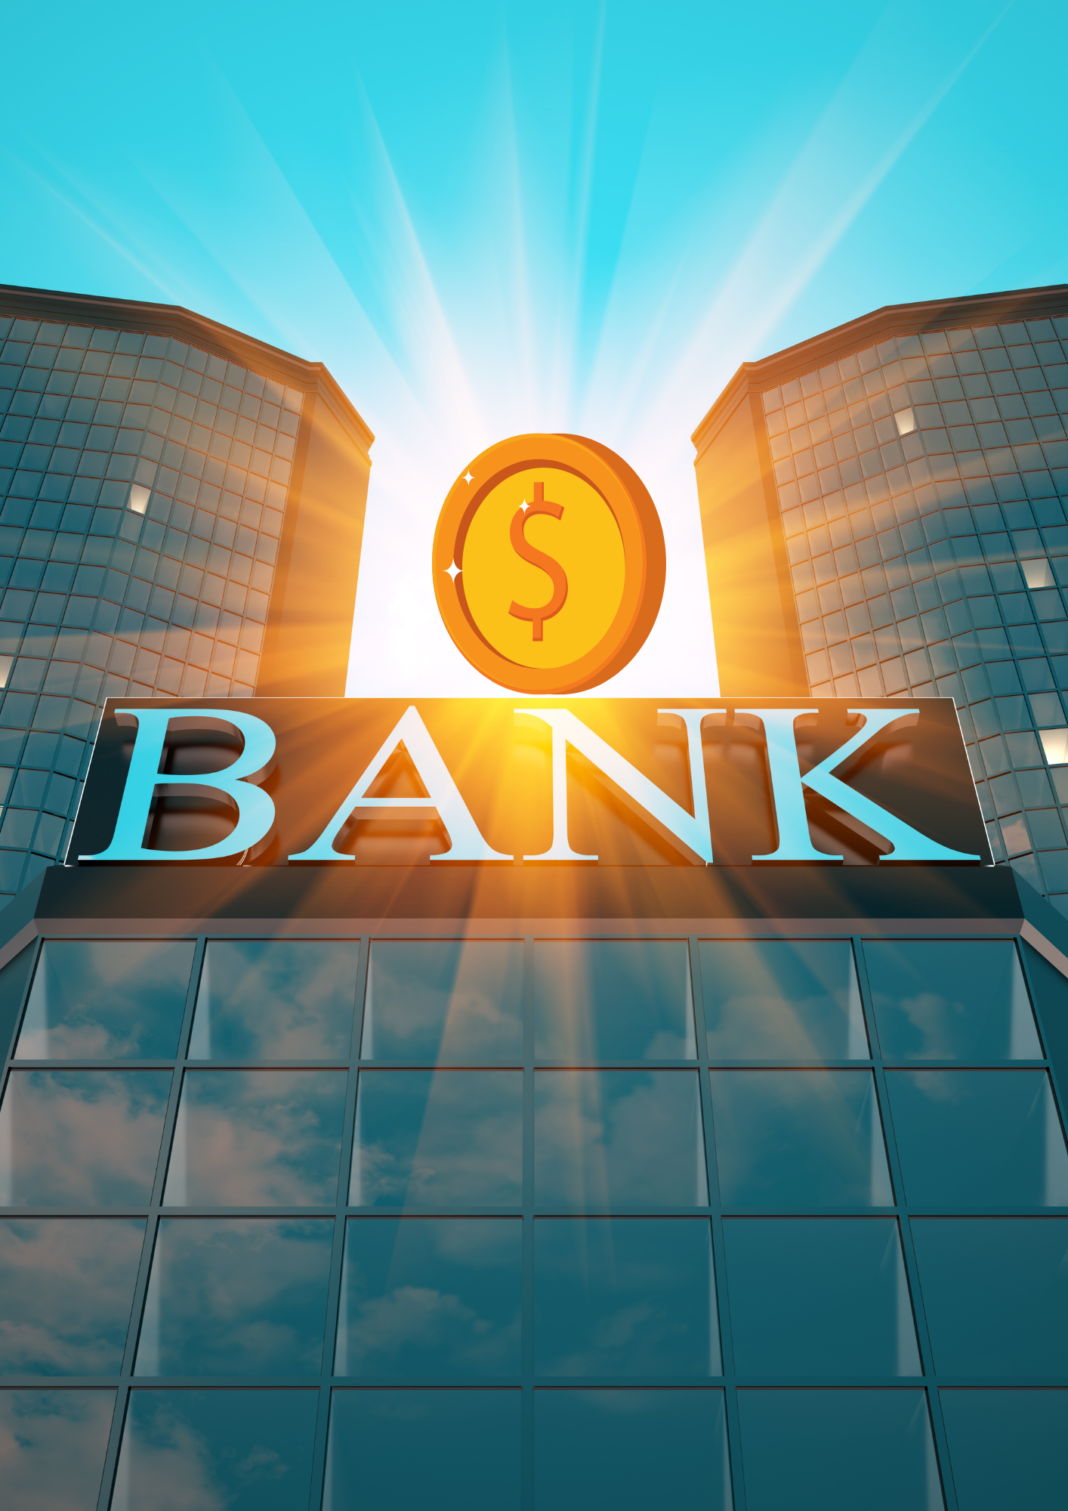 Bancos l Pseudobancos en videojuegos l Chainlatn.com l Portada